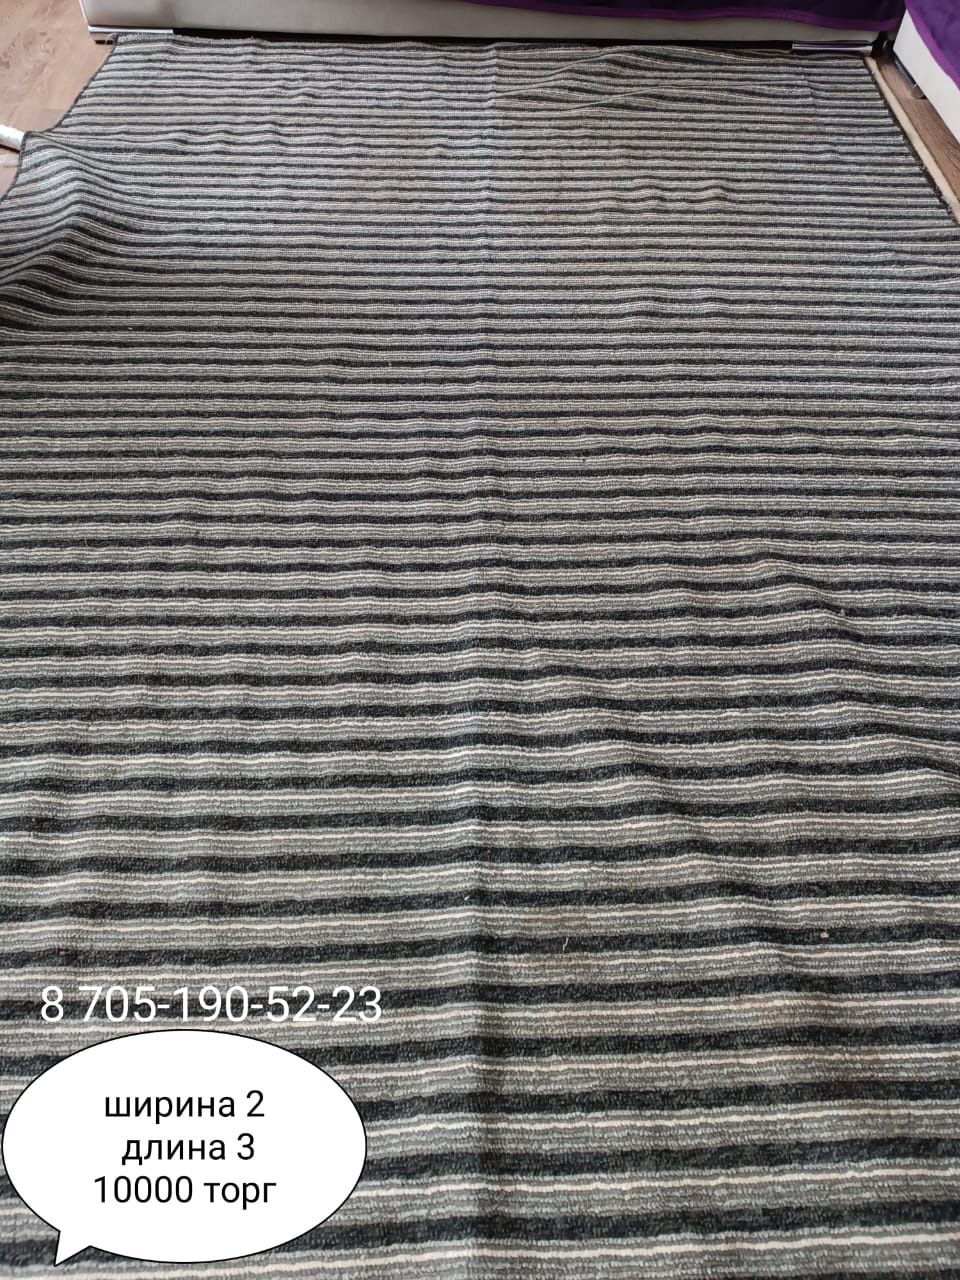 Продам ковры в хорошем состоянии